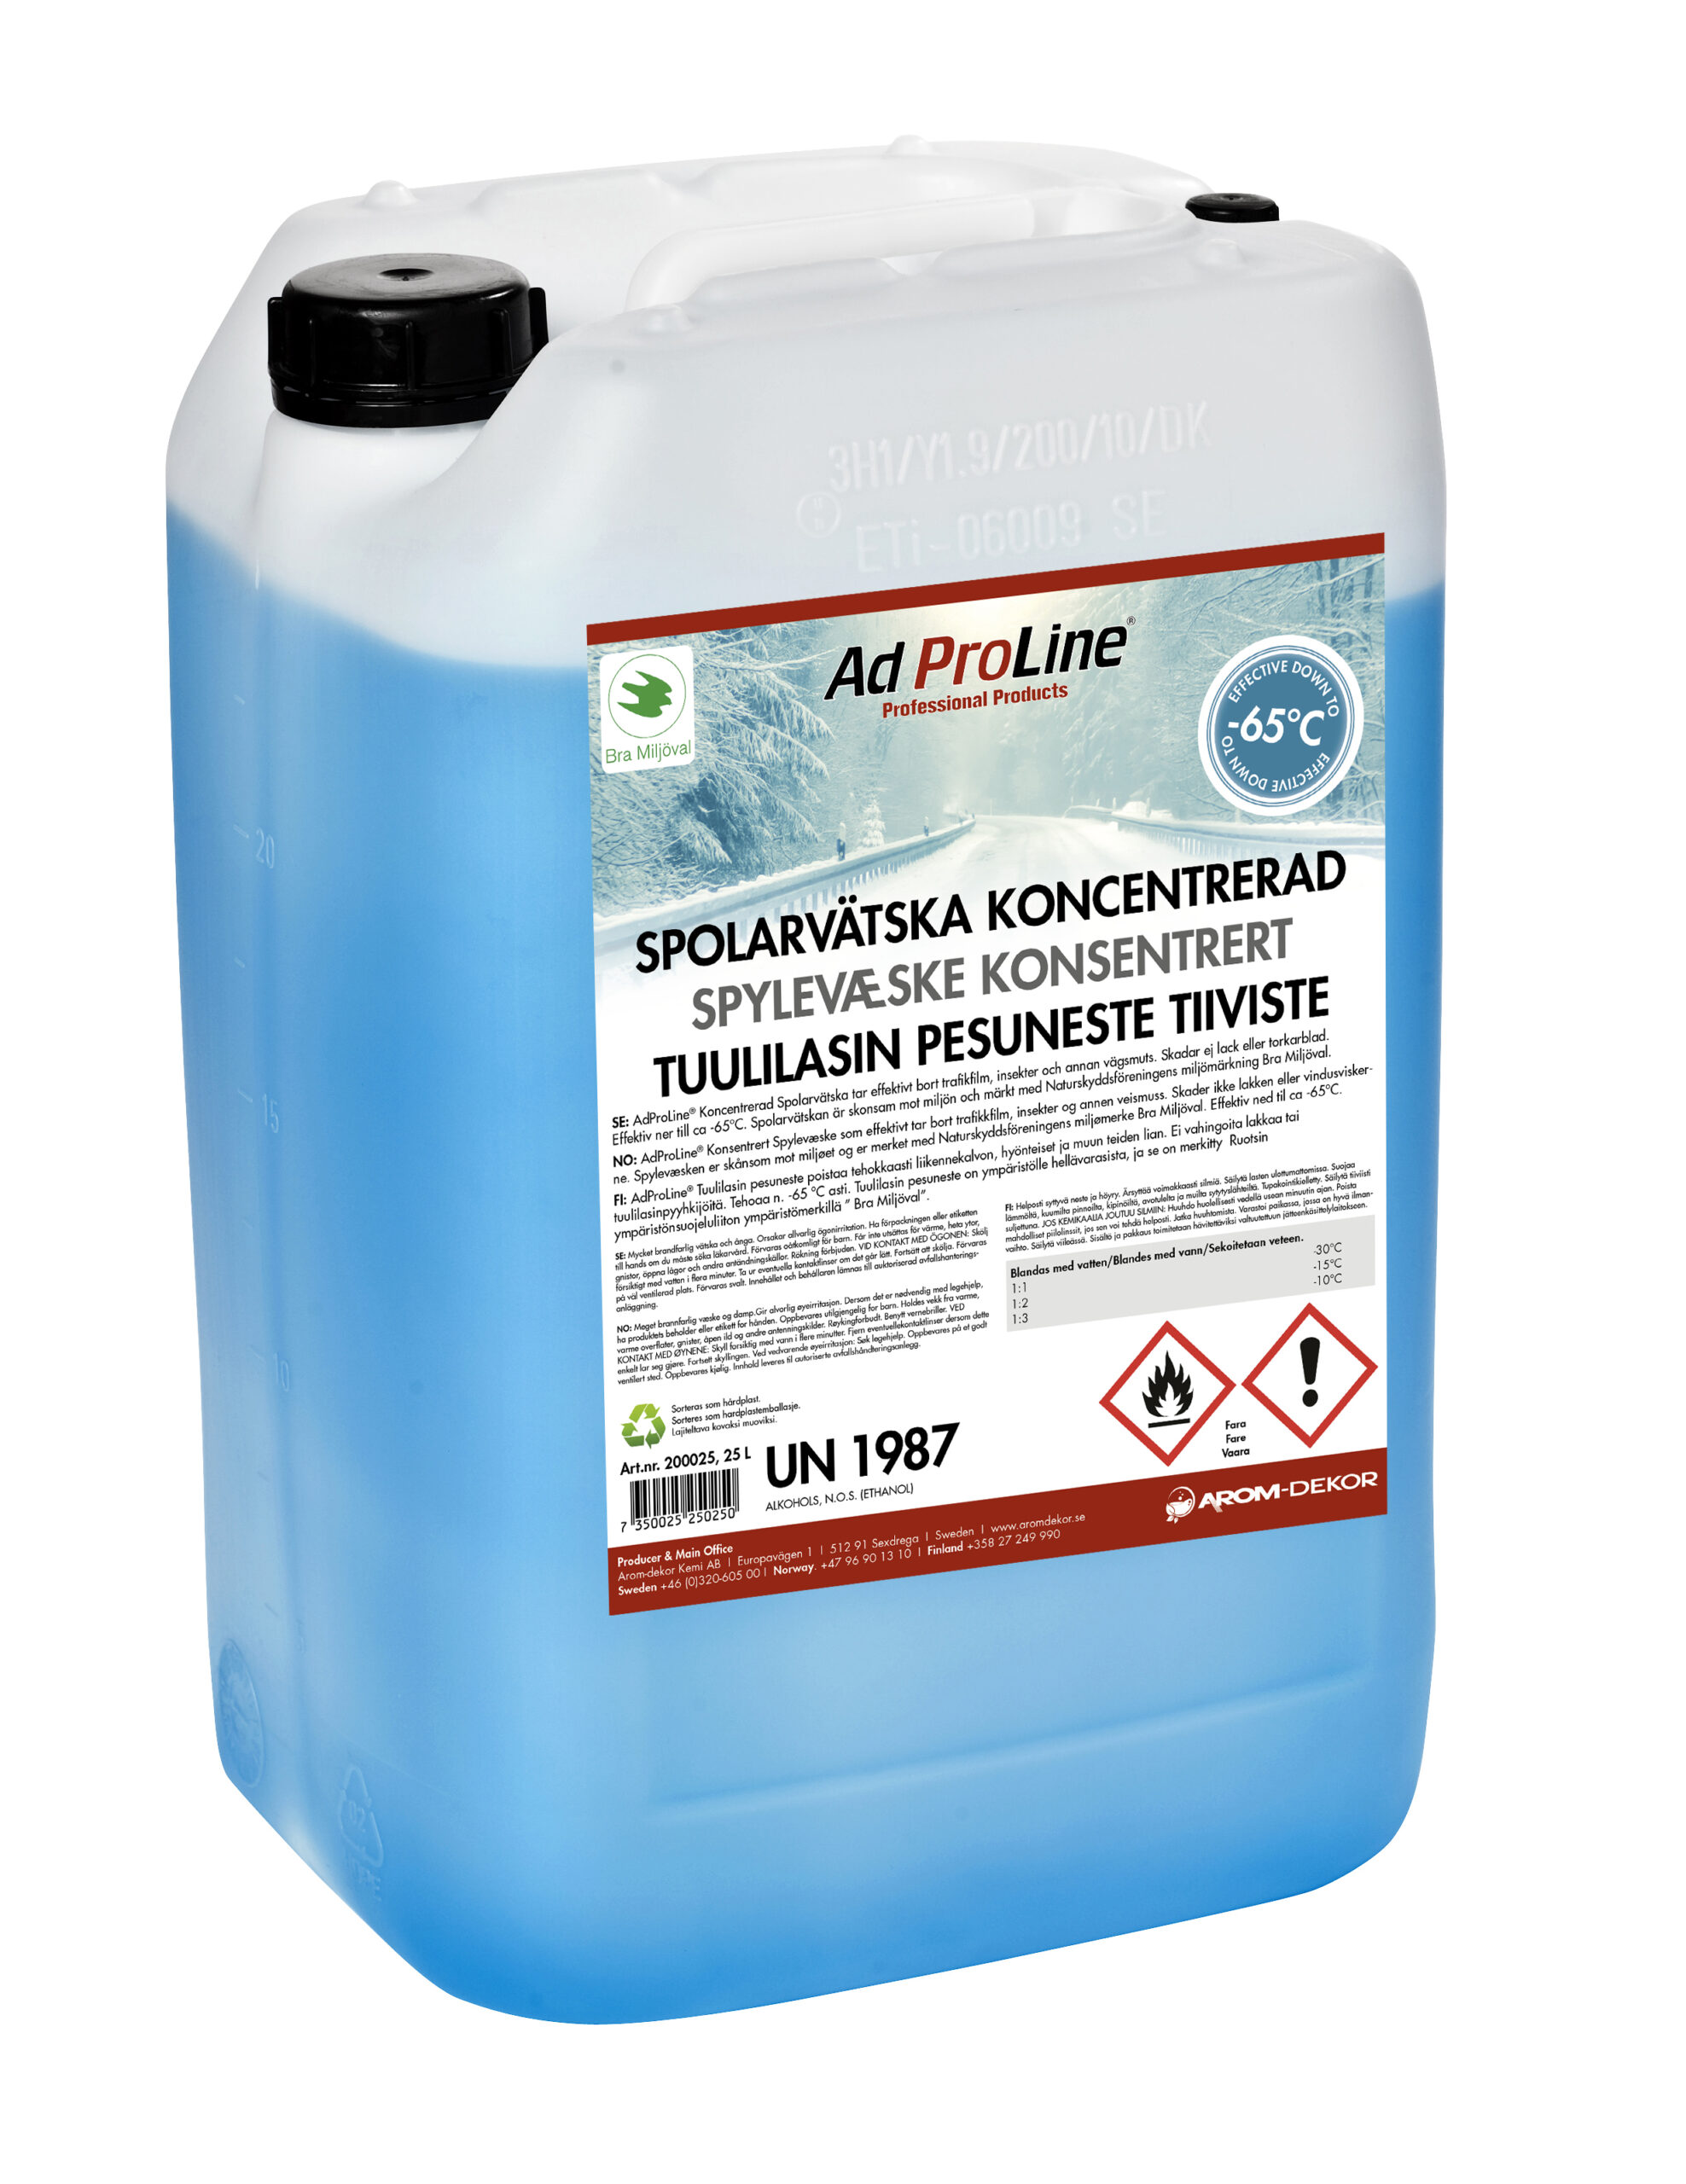 AdProLine® Spolarvätska Koncentrerad, 25 liter dunk (2-pack)-image